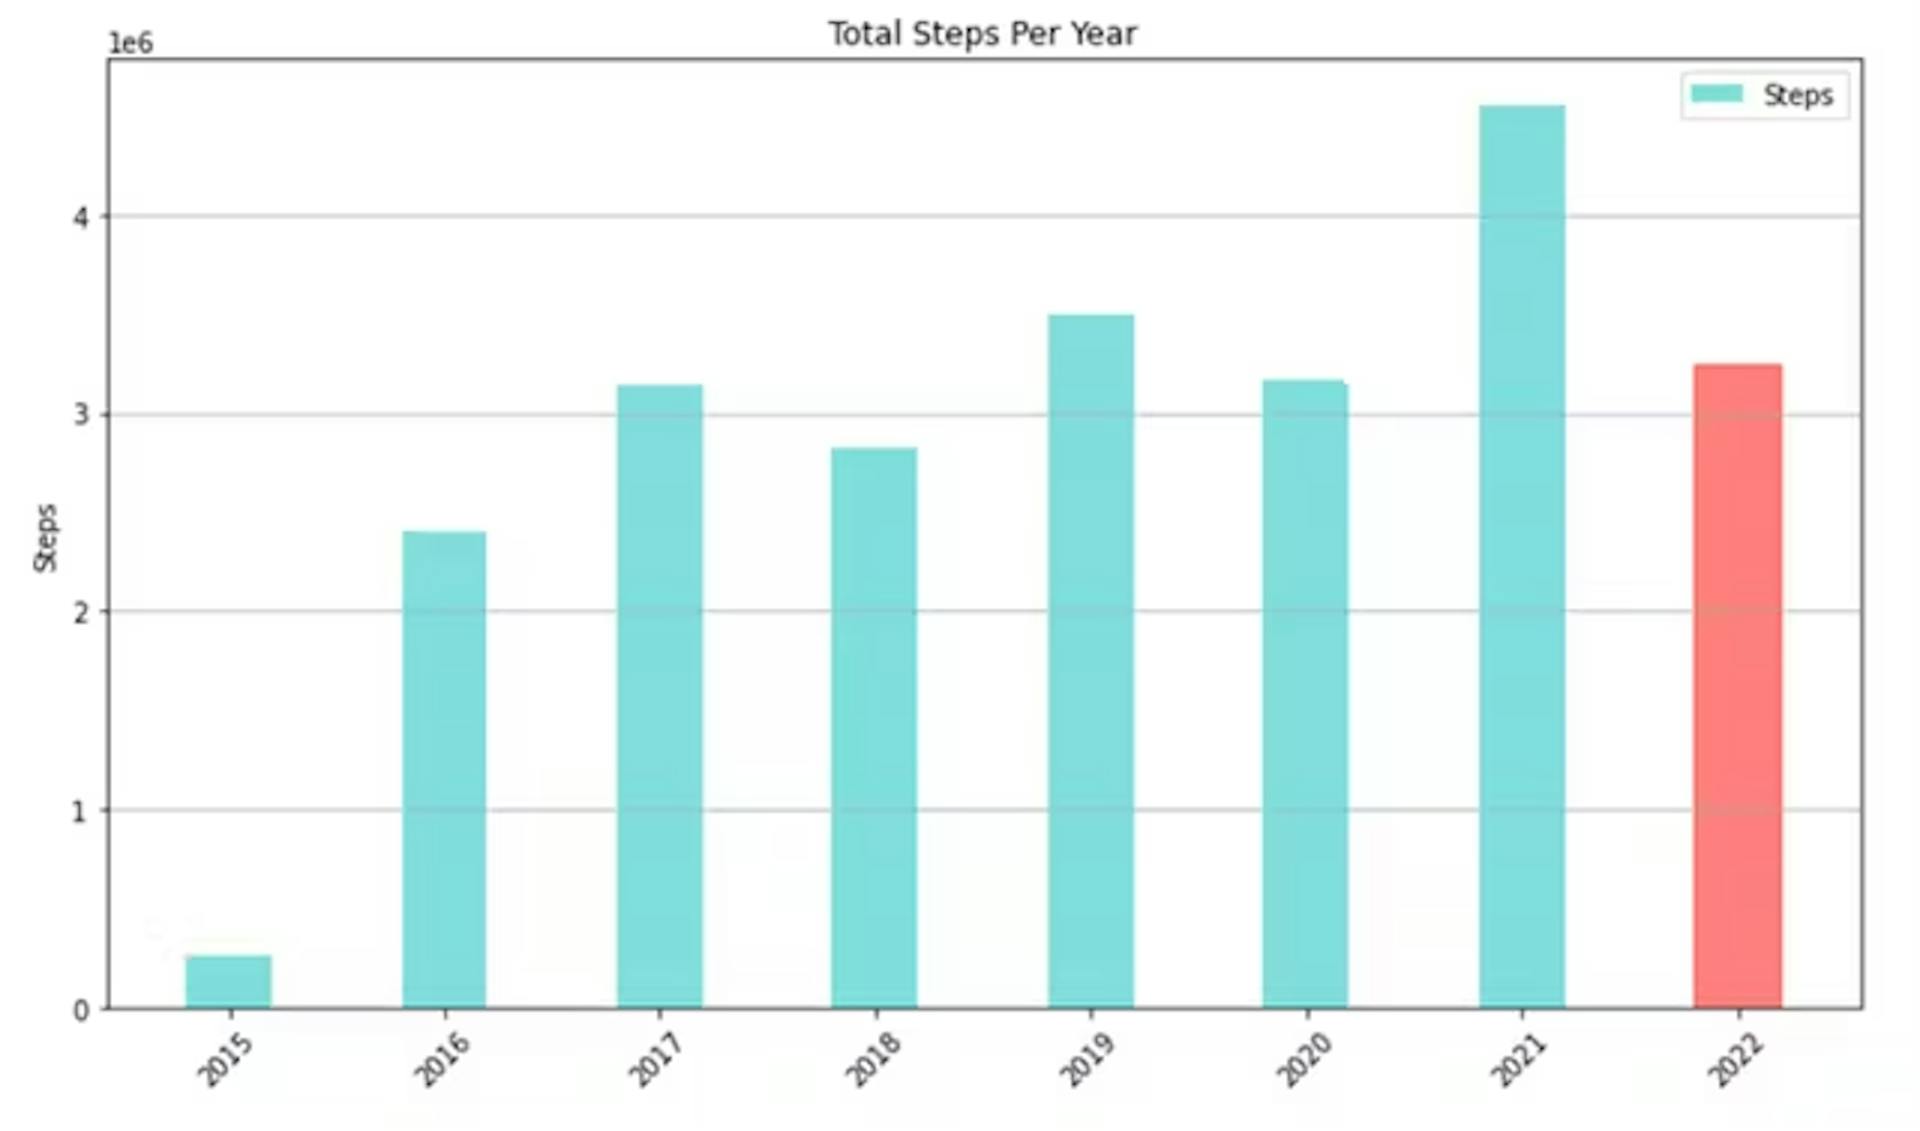 Fig 1. Diagramme à barres indiquant le nombre de pas que j'ai effectués par an